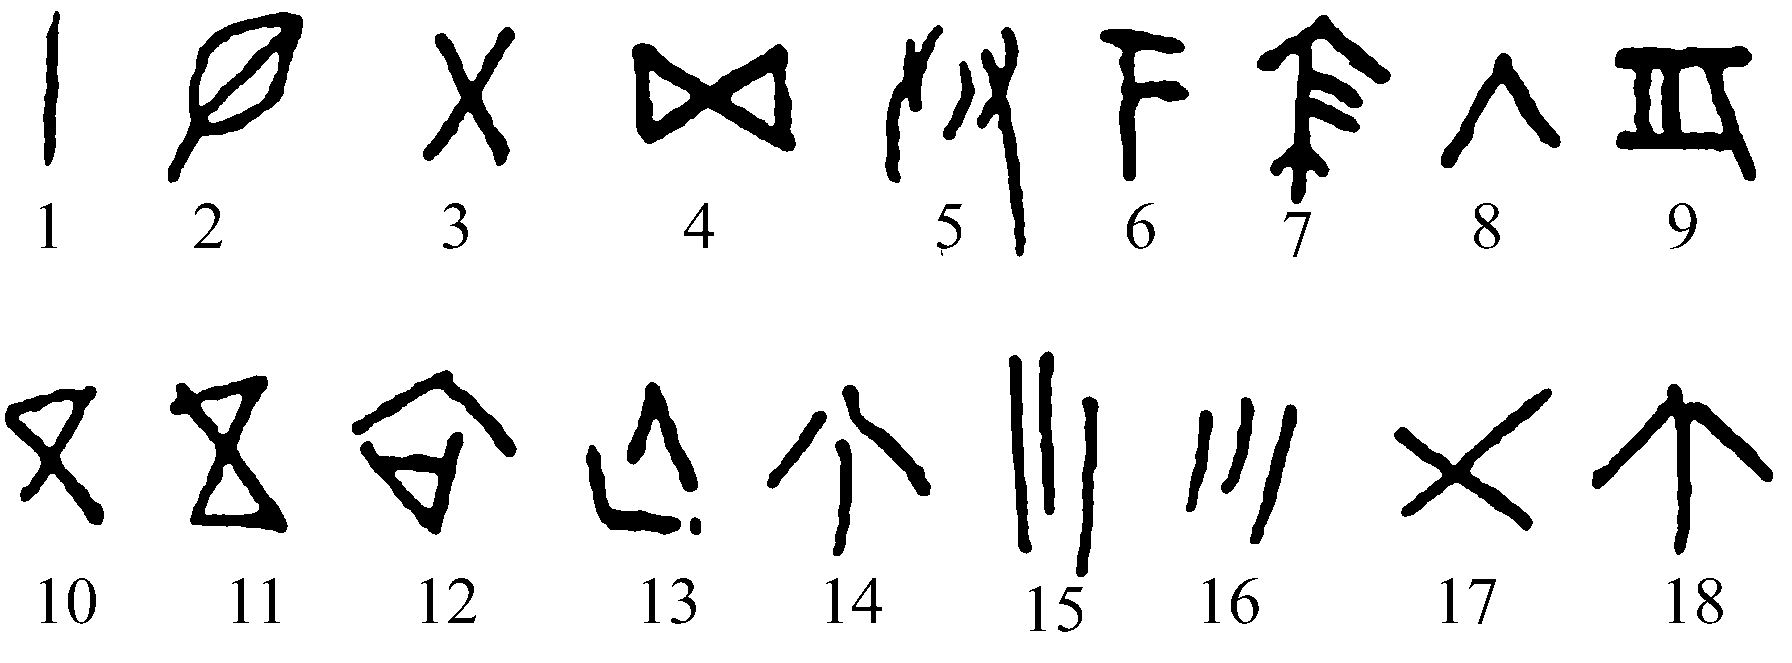 七、龙山文化刻划符号